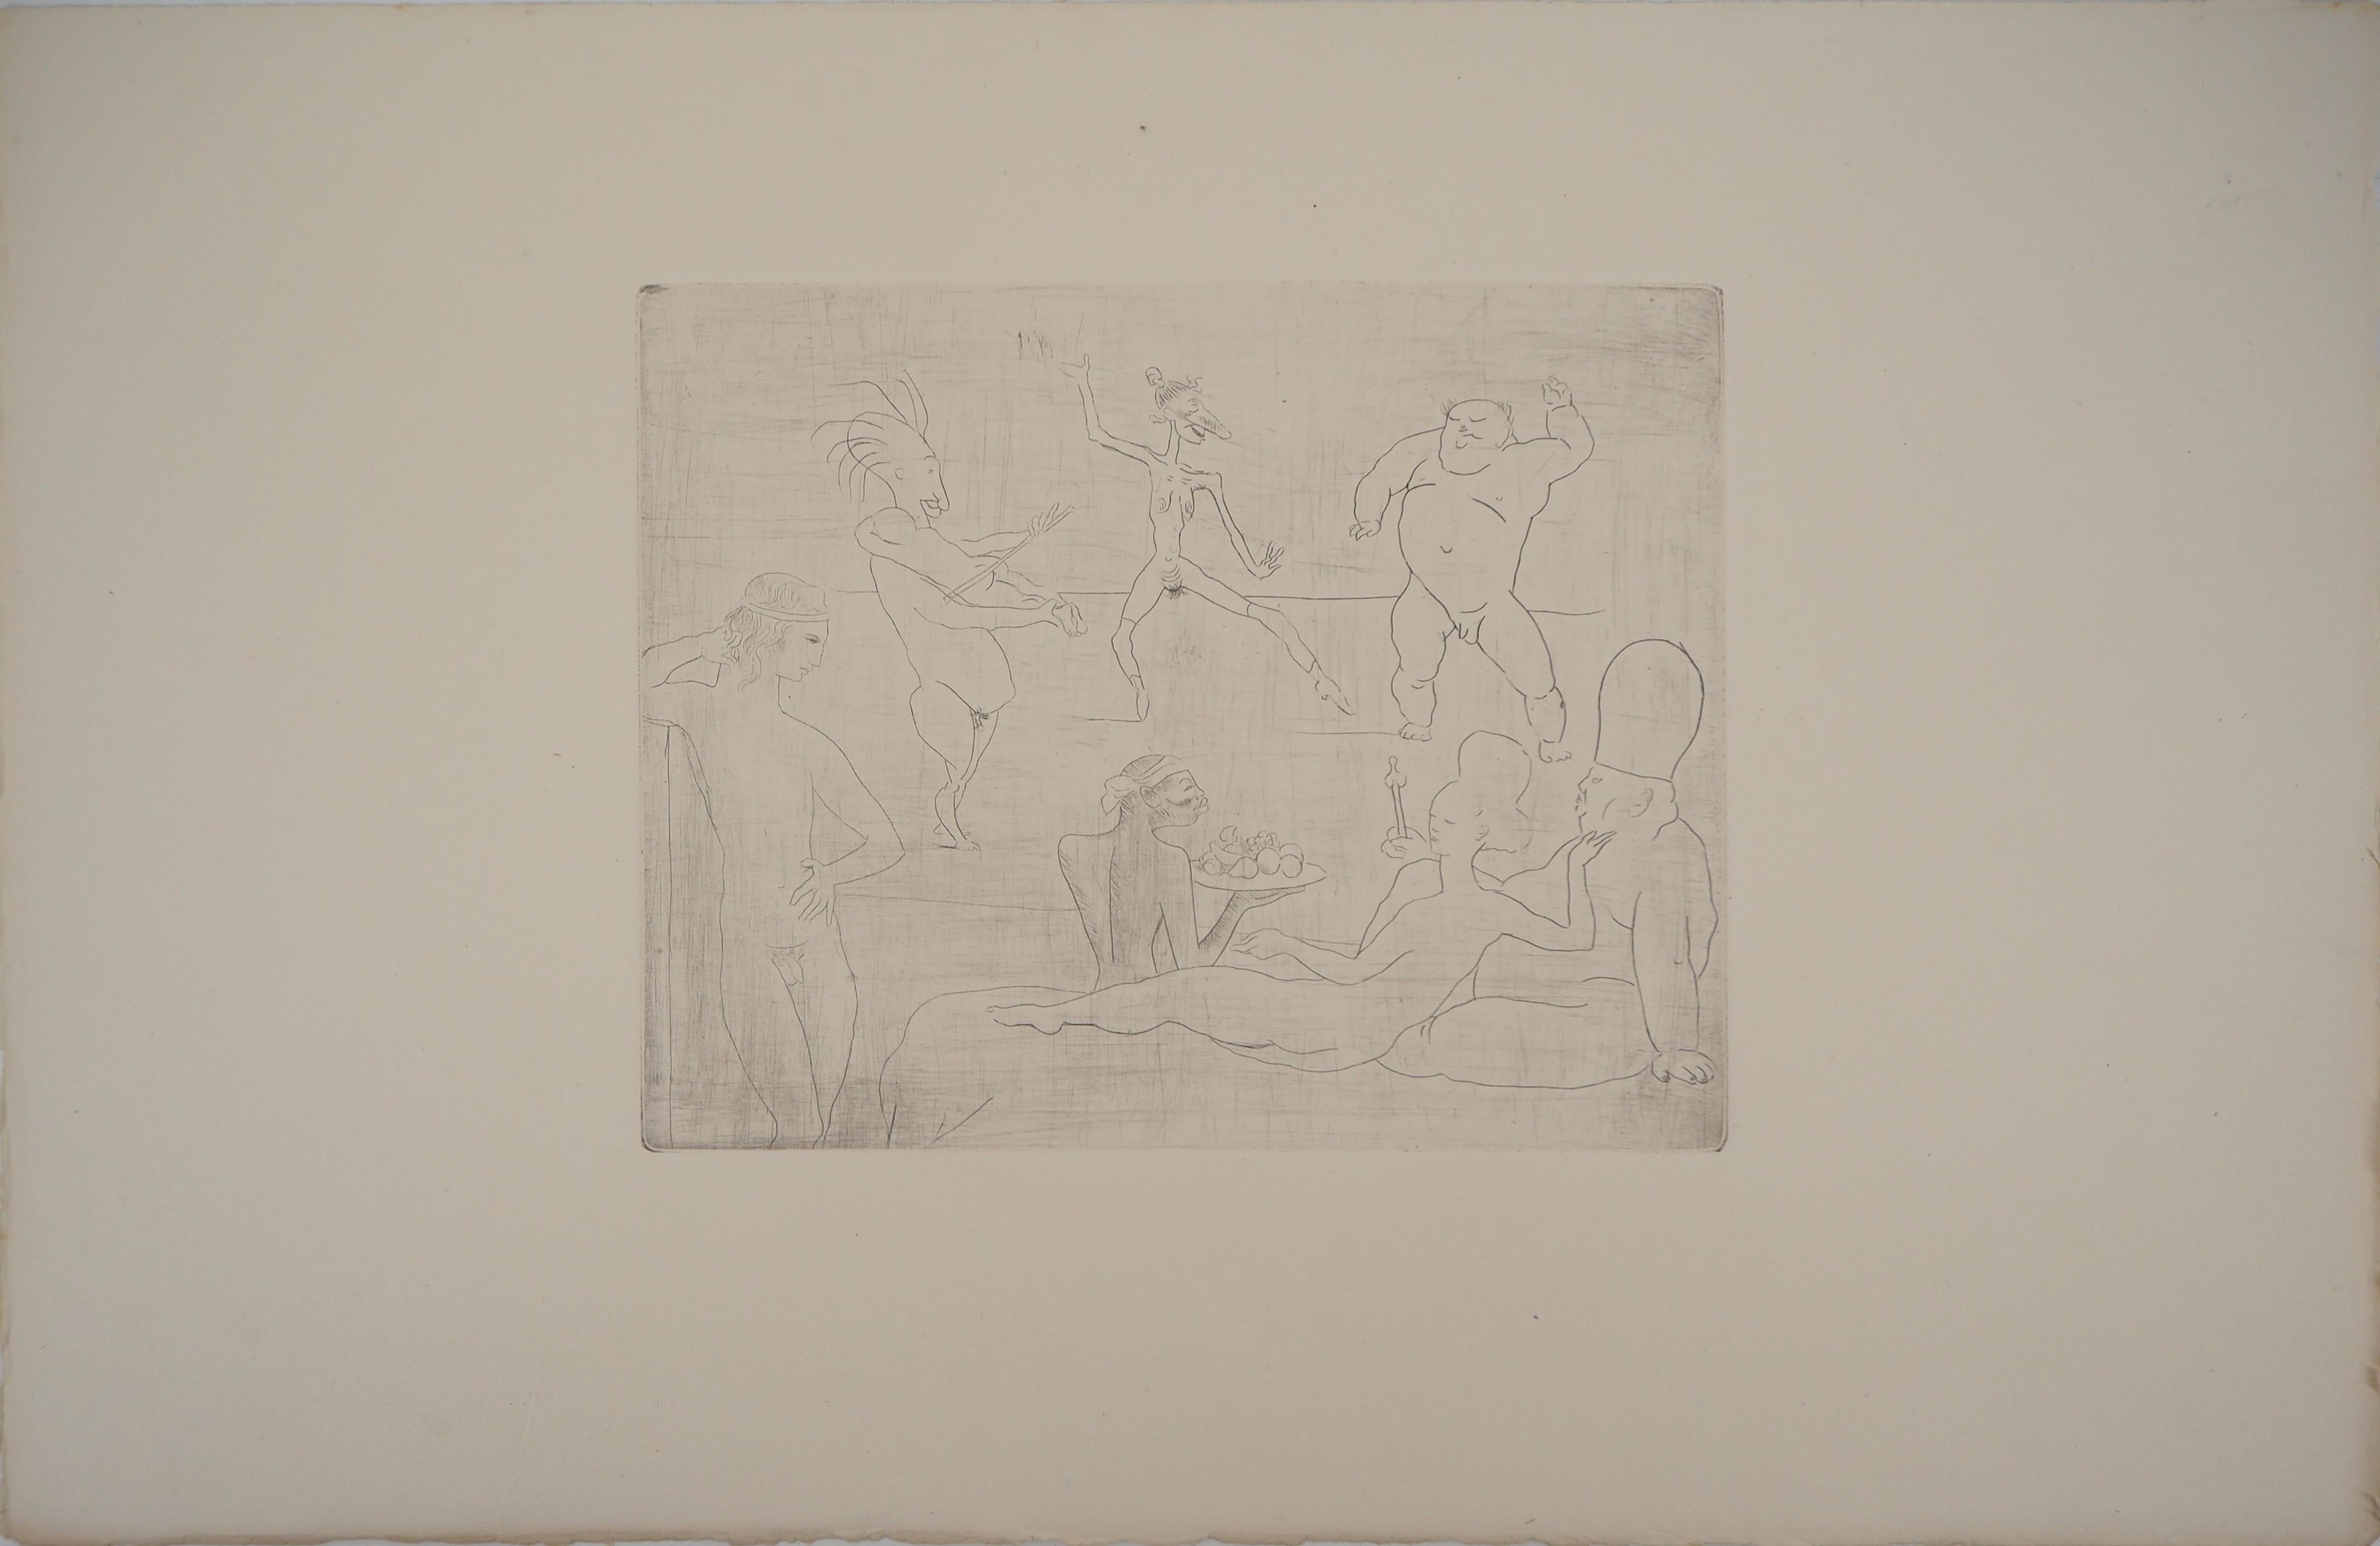 Les Saltimbanques : La Danse - Eau-forte originale (Bloch n°15) - Print de Pablo Picasso